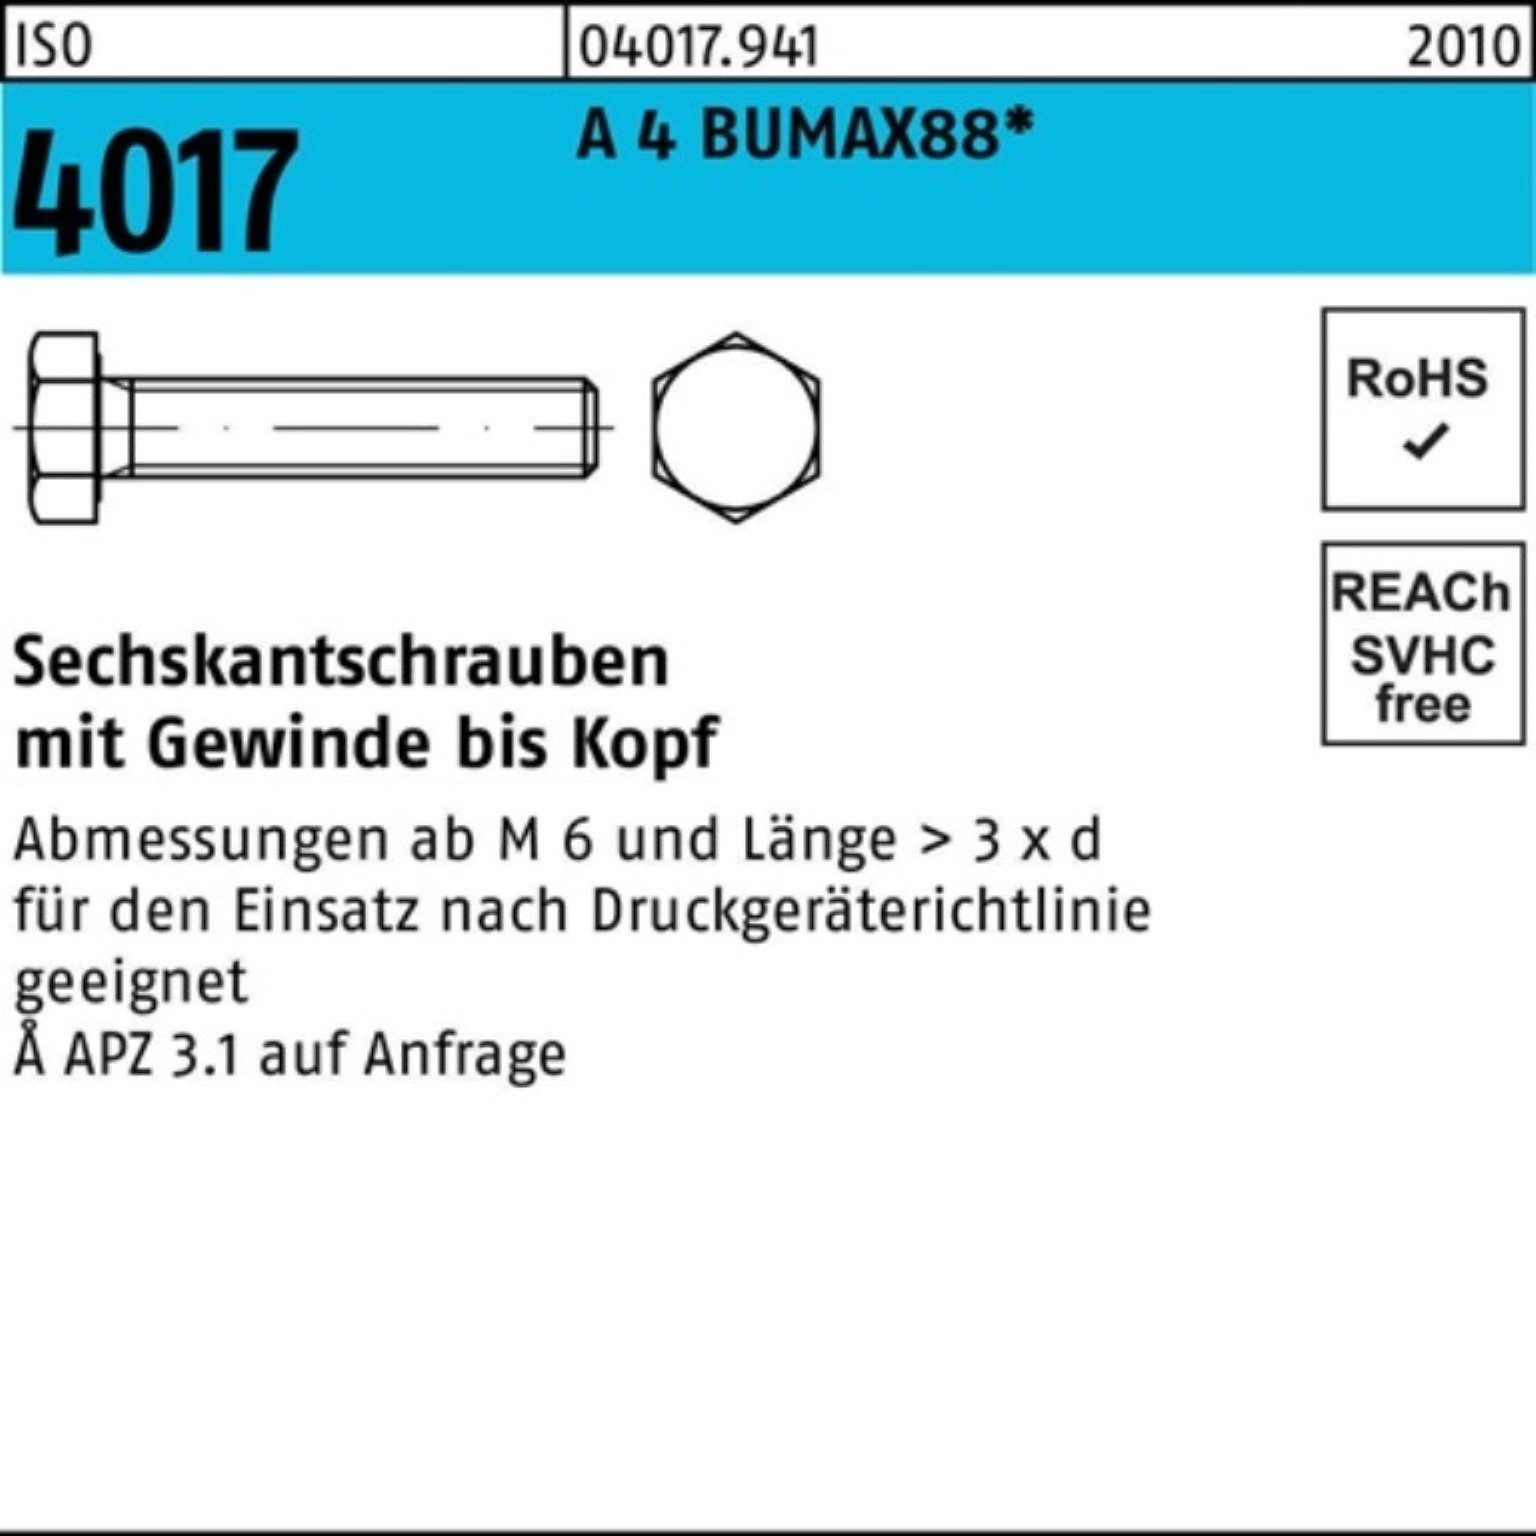 Bufab Sechskantschraube 100er Pack Sechskantschraube ISO 4017 VG M10x 40 A 4 BUMAX88 50 Stück | Schrauben